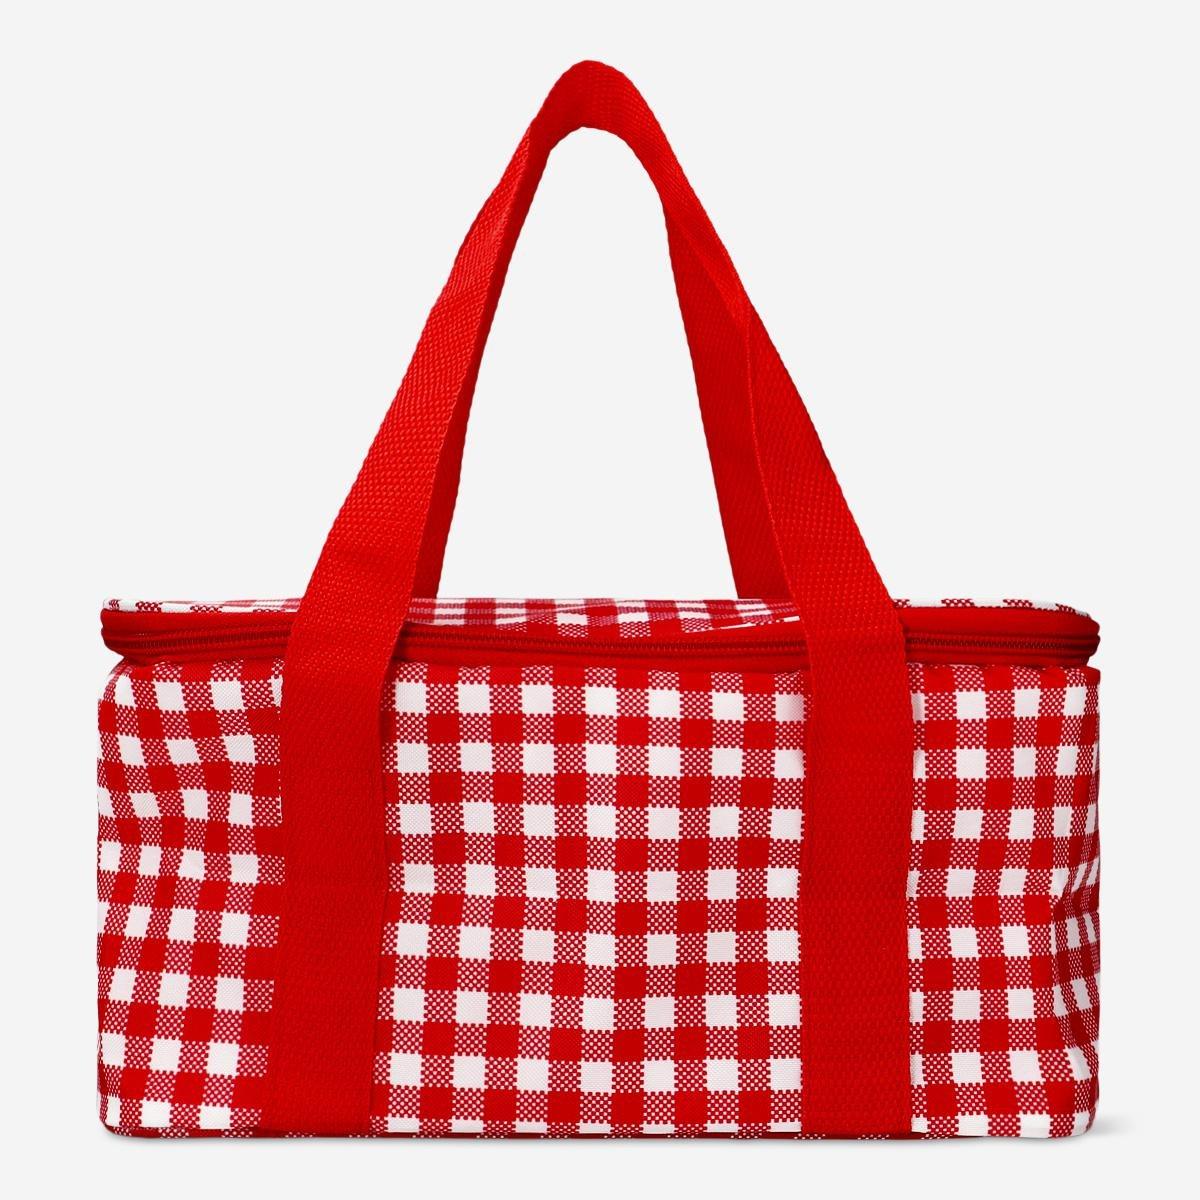 Red cooler bag